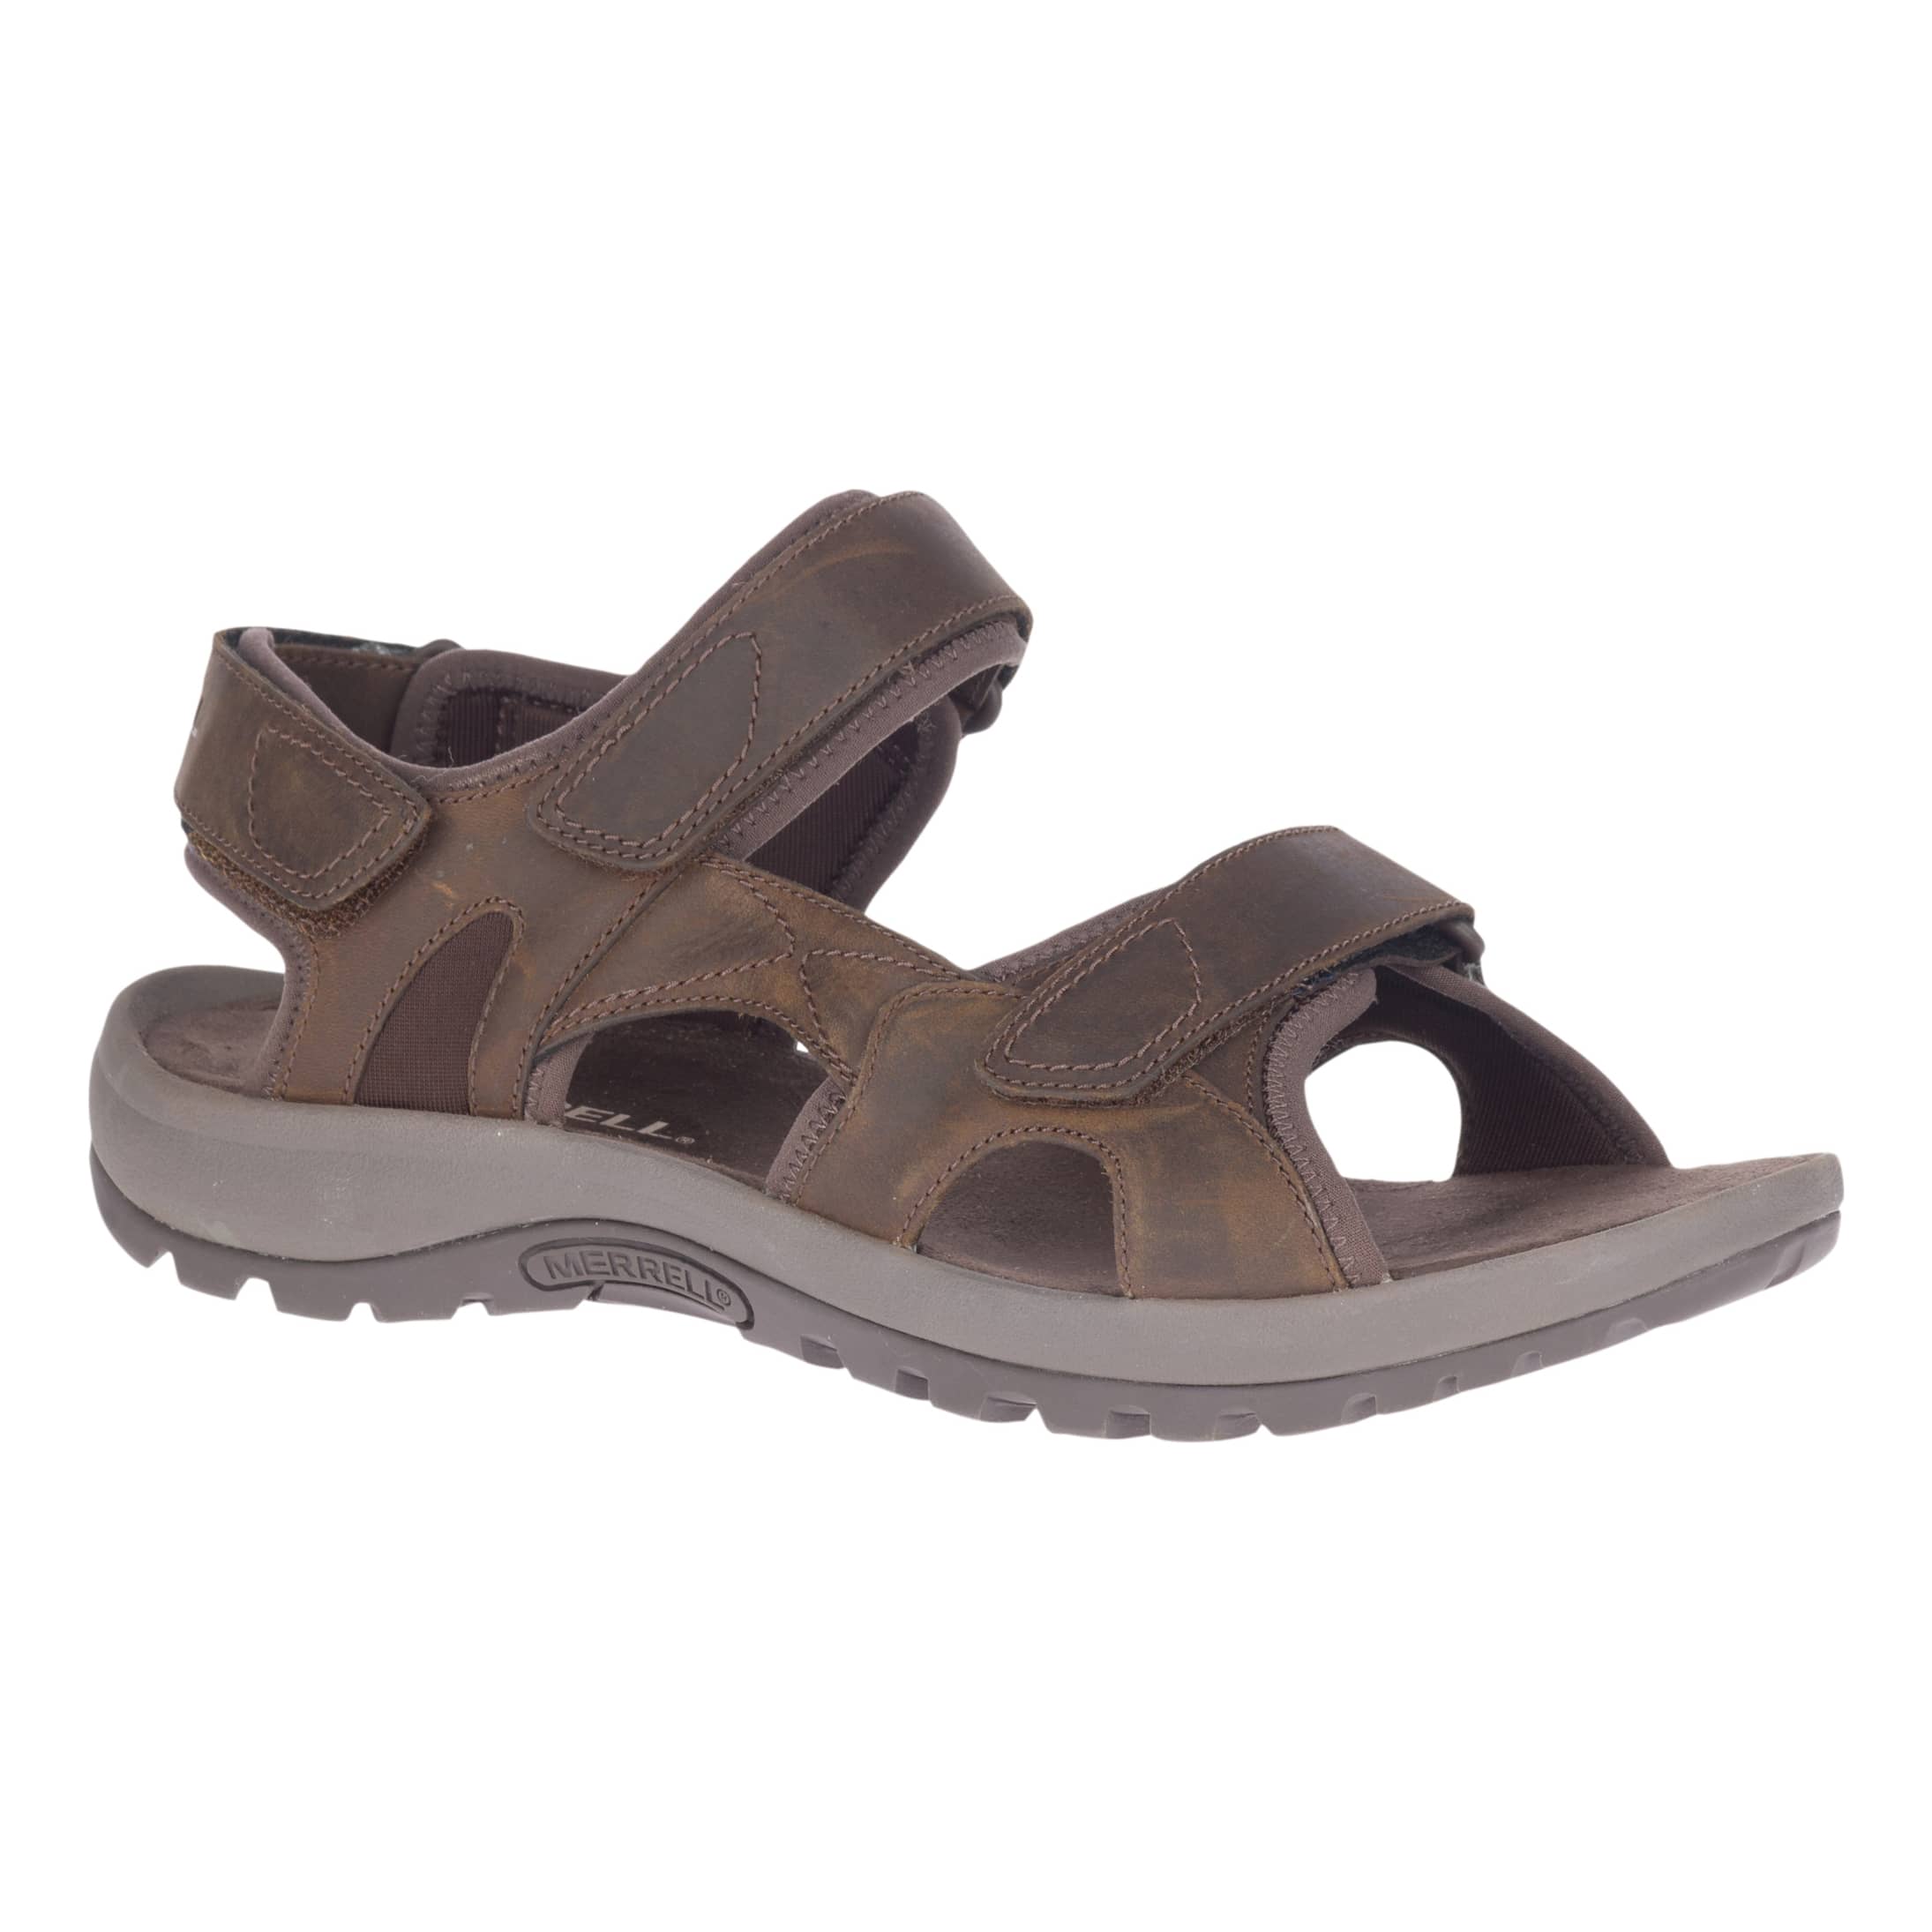 Merrell® Men’s Sandspur 2 Convertible Sandal